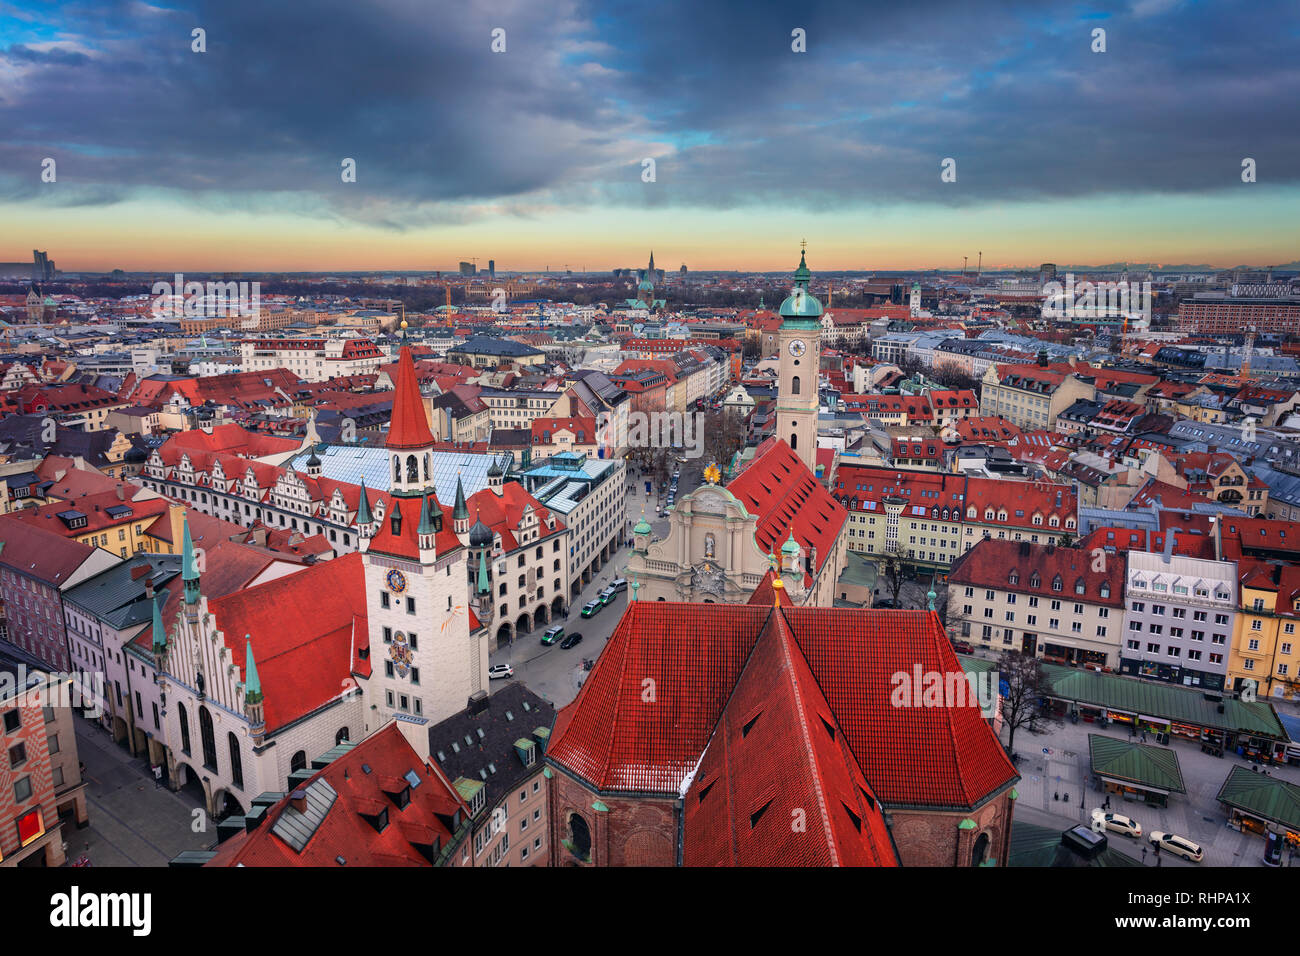 Munich. Paysage urbain de l'antenne de droit du centre-ville de Munich, Allemagne pendant le coucher du soleil Banque D'Images